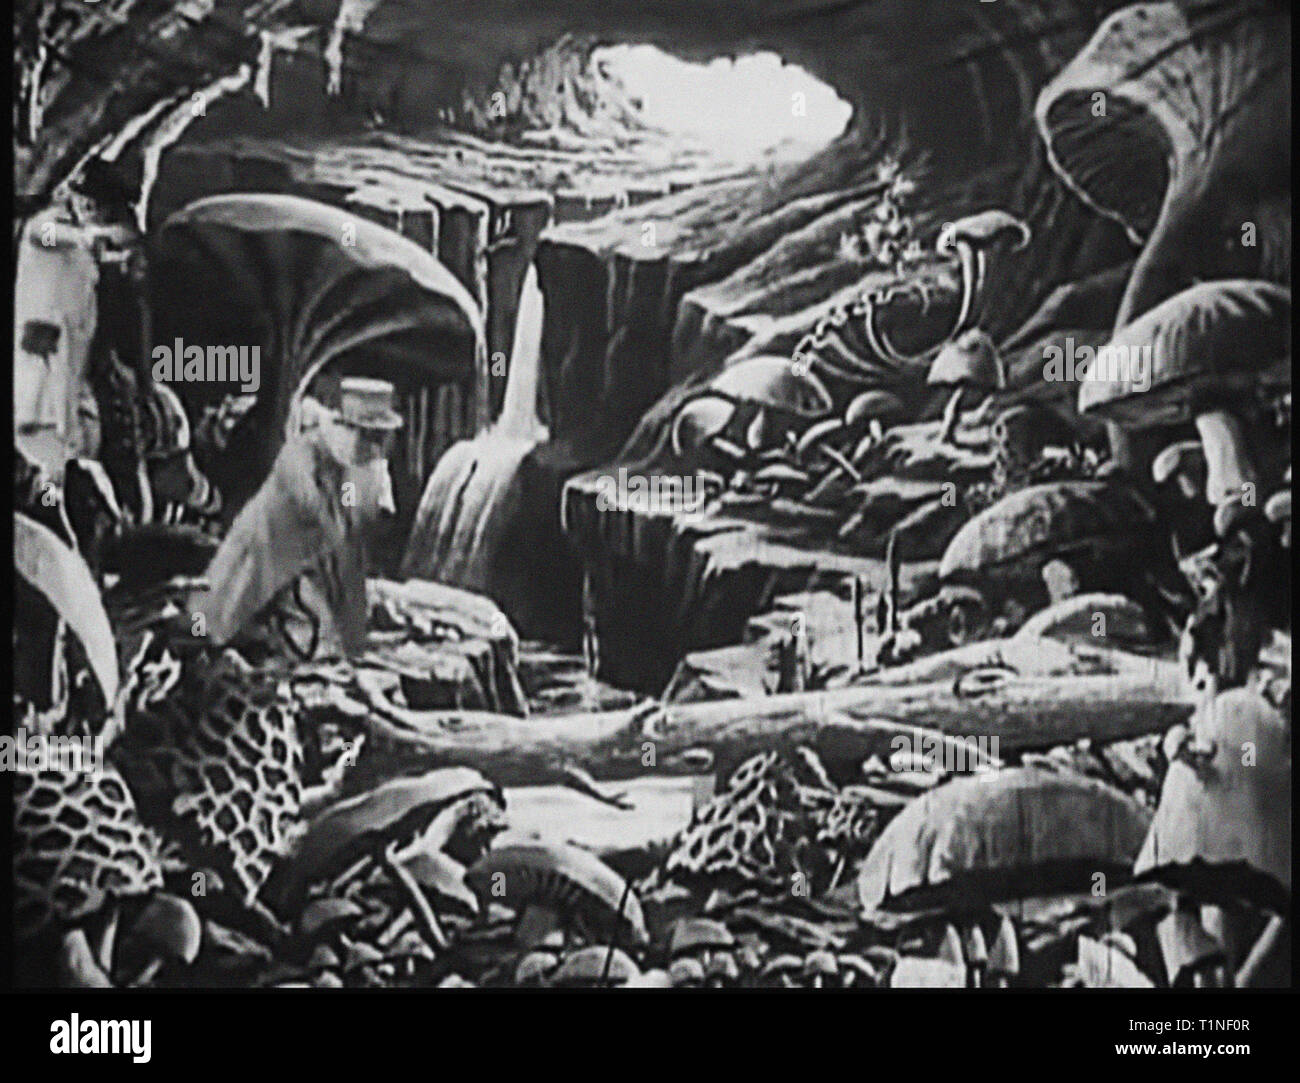 Eine Reise zum Mond (Französisch: Le Voyage dans la Lune) [a] ist ein französischer Abenteuerfilm von 1902 unter der Regie von Georges Méliès. Inspiriert durch eine Vielzahl von Quellen, darunter die Romane von Jules Verne von der Erde zum Mond und um den Mond, der Film folgt einer Gruppe von Astronomen, die sich der Mond in einer Kanone reisen - selbstfahrende Kapsel, erkunden Sie die Oberfläche des Mondes, Flucht aus einer u-Gruppe von selenites (lunar Bewohner) und Rückkehr zur Erde mit einer unverlierbaren Selenit. Es verfügt über ein Ensemble Besetzung der Französischen theatrical Performer, geführt von méliès sich selbst in der Rolle von Professor Barbenfouillis, und Stockfoto